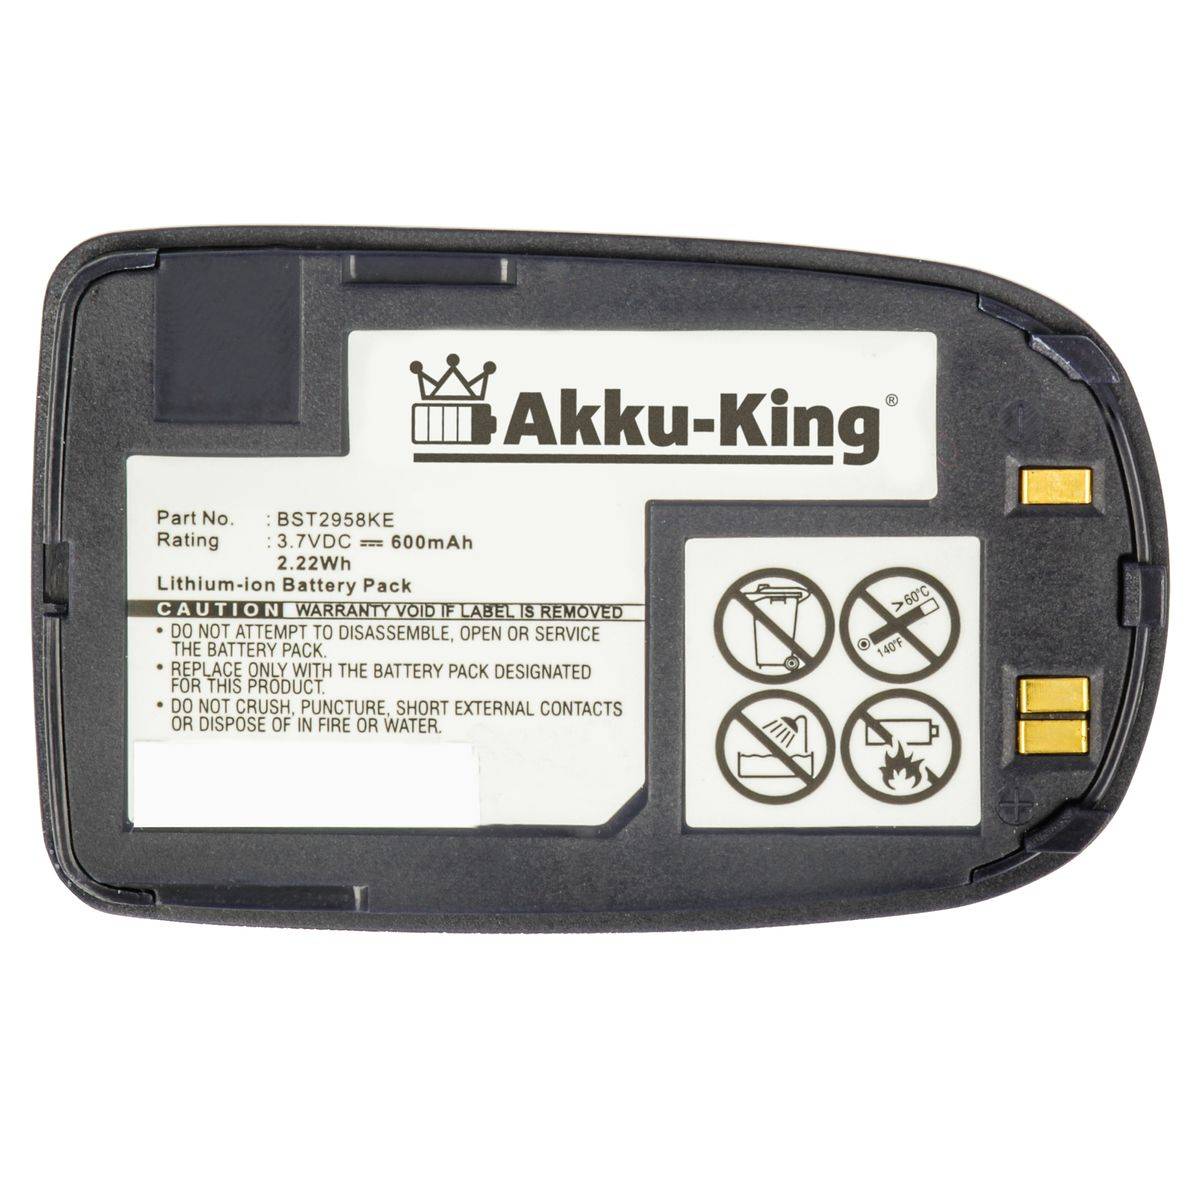 dunkelblau kompatibel Samsung Handy-Akku, Akku Volt, 600mAh Li-Ion AKKU-KING BST2958 mit 3.7